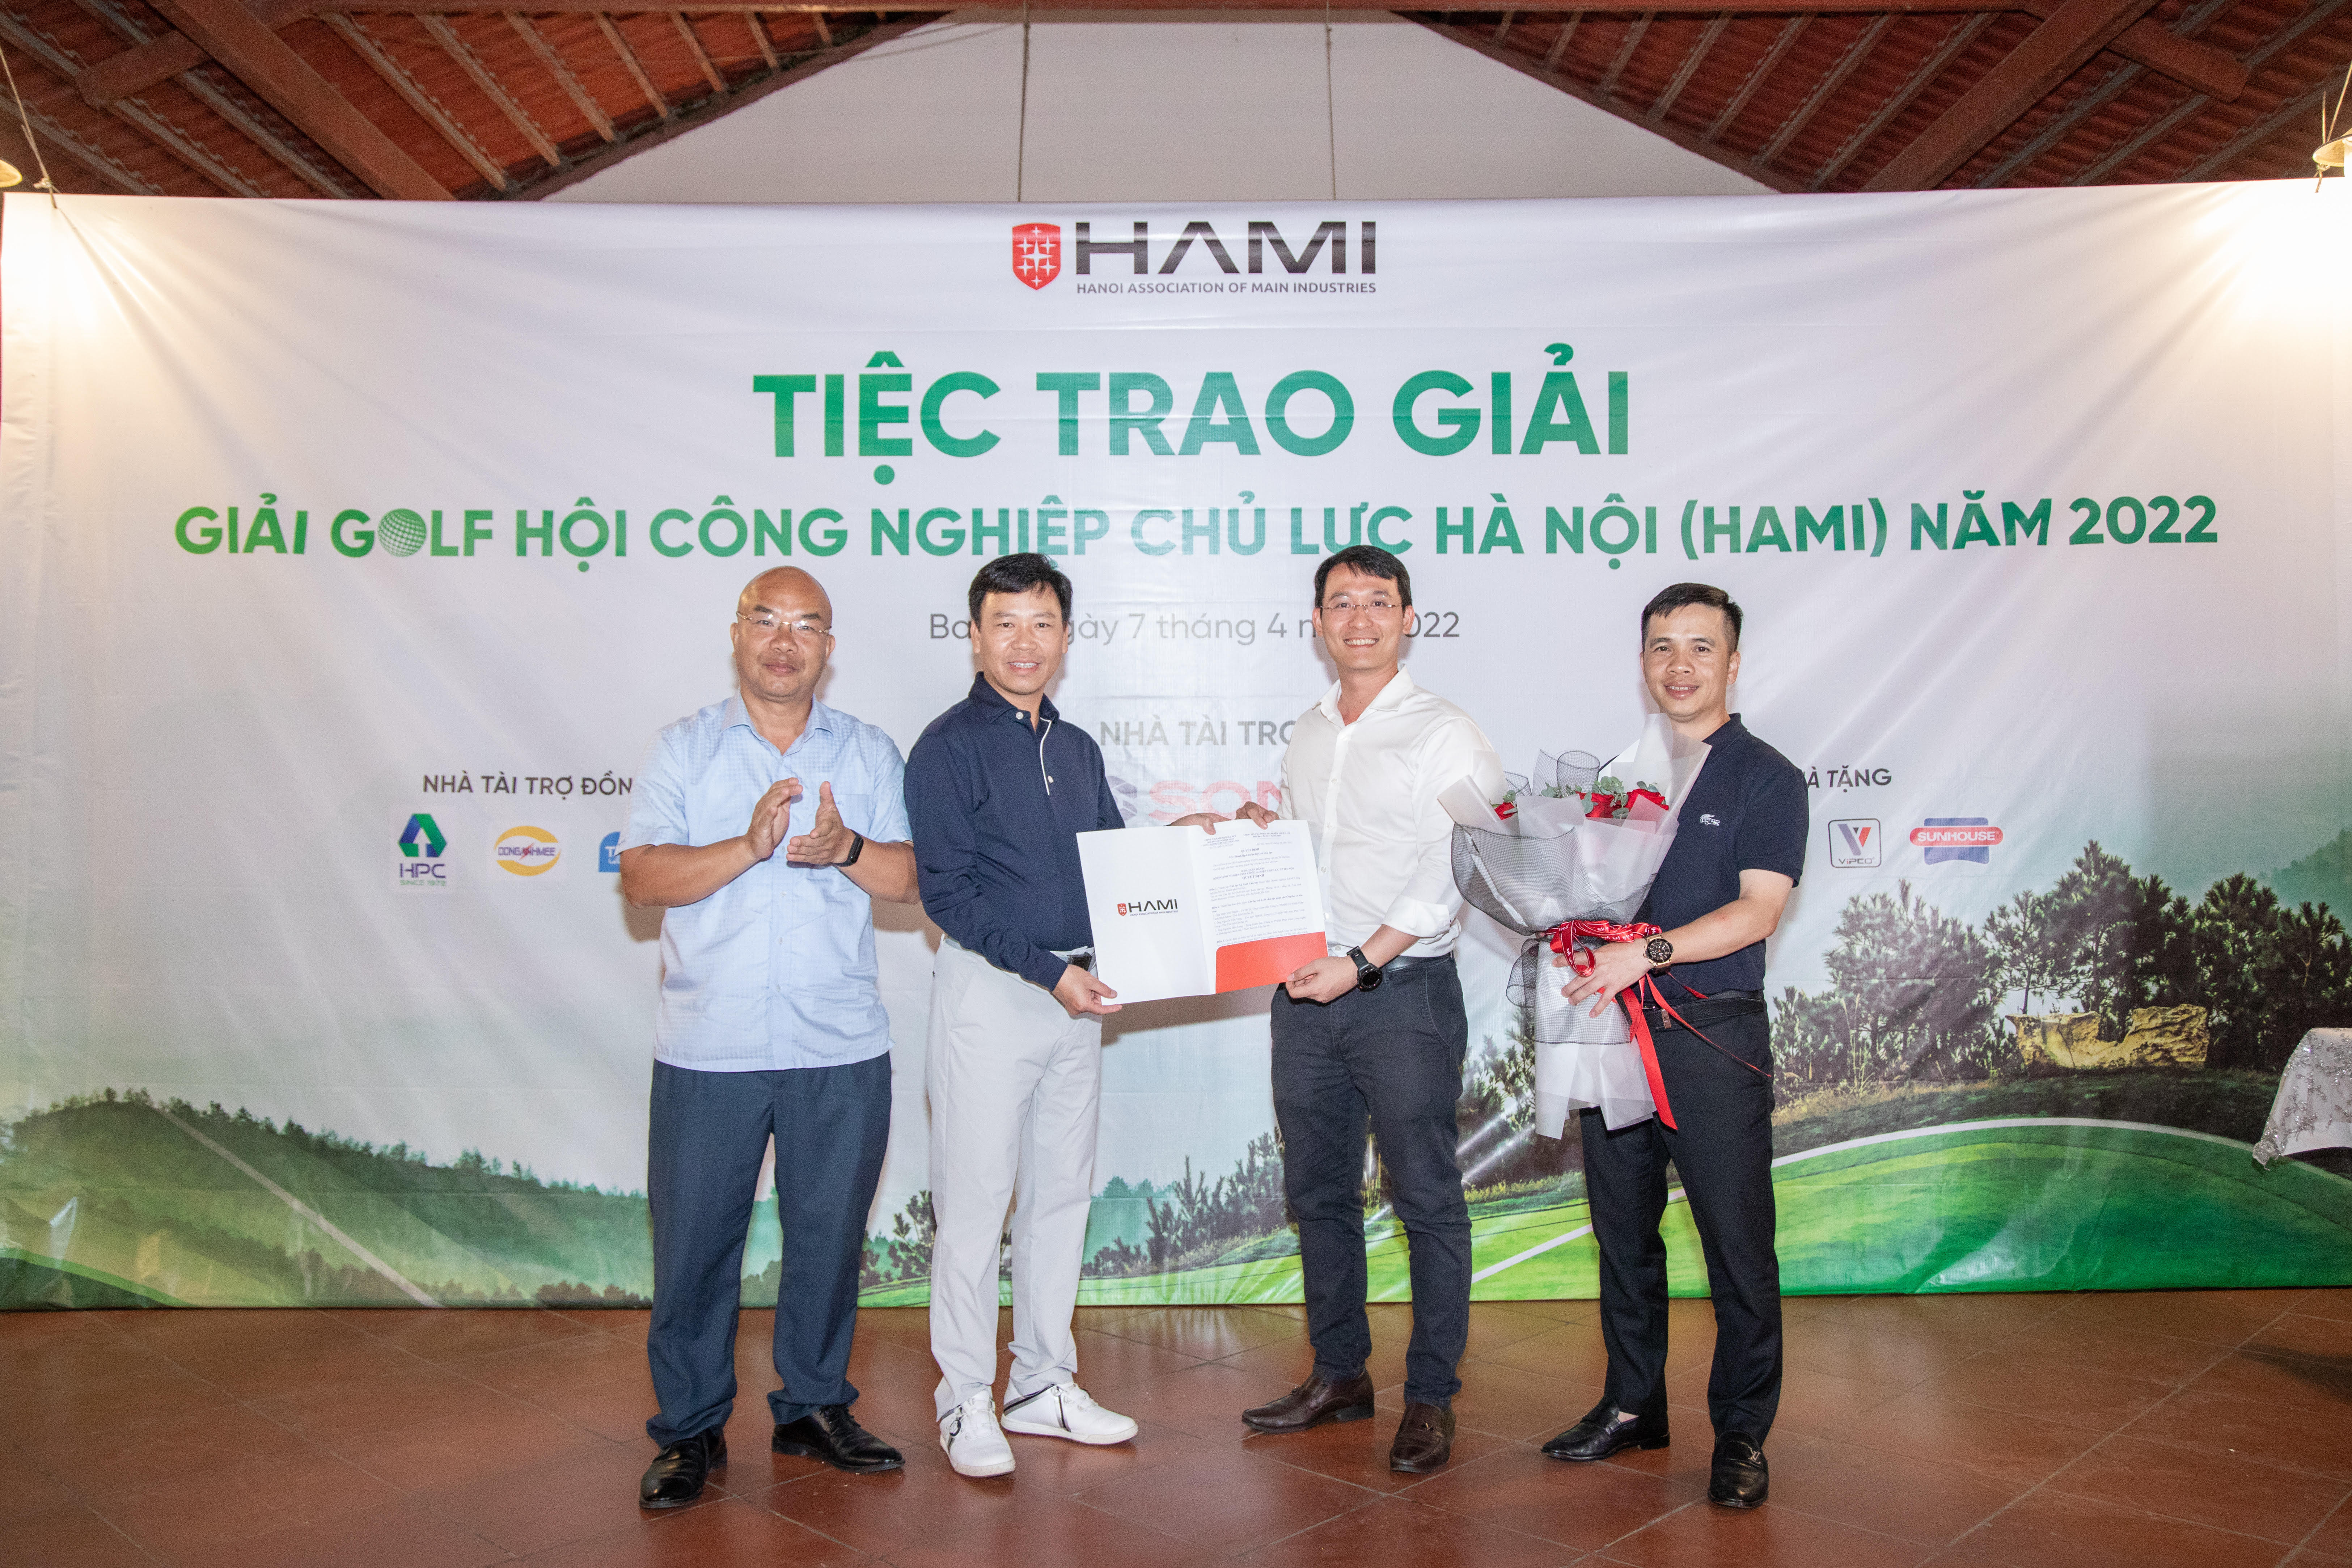 Ông Lê Vĩnh Sơn - Chủ tịch Hội đã trao quyết định Thành lập và Ban điều hành CLB Golf chủ lực